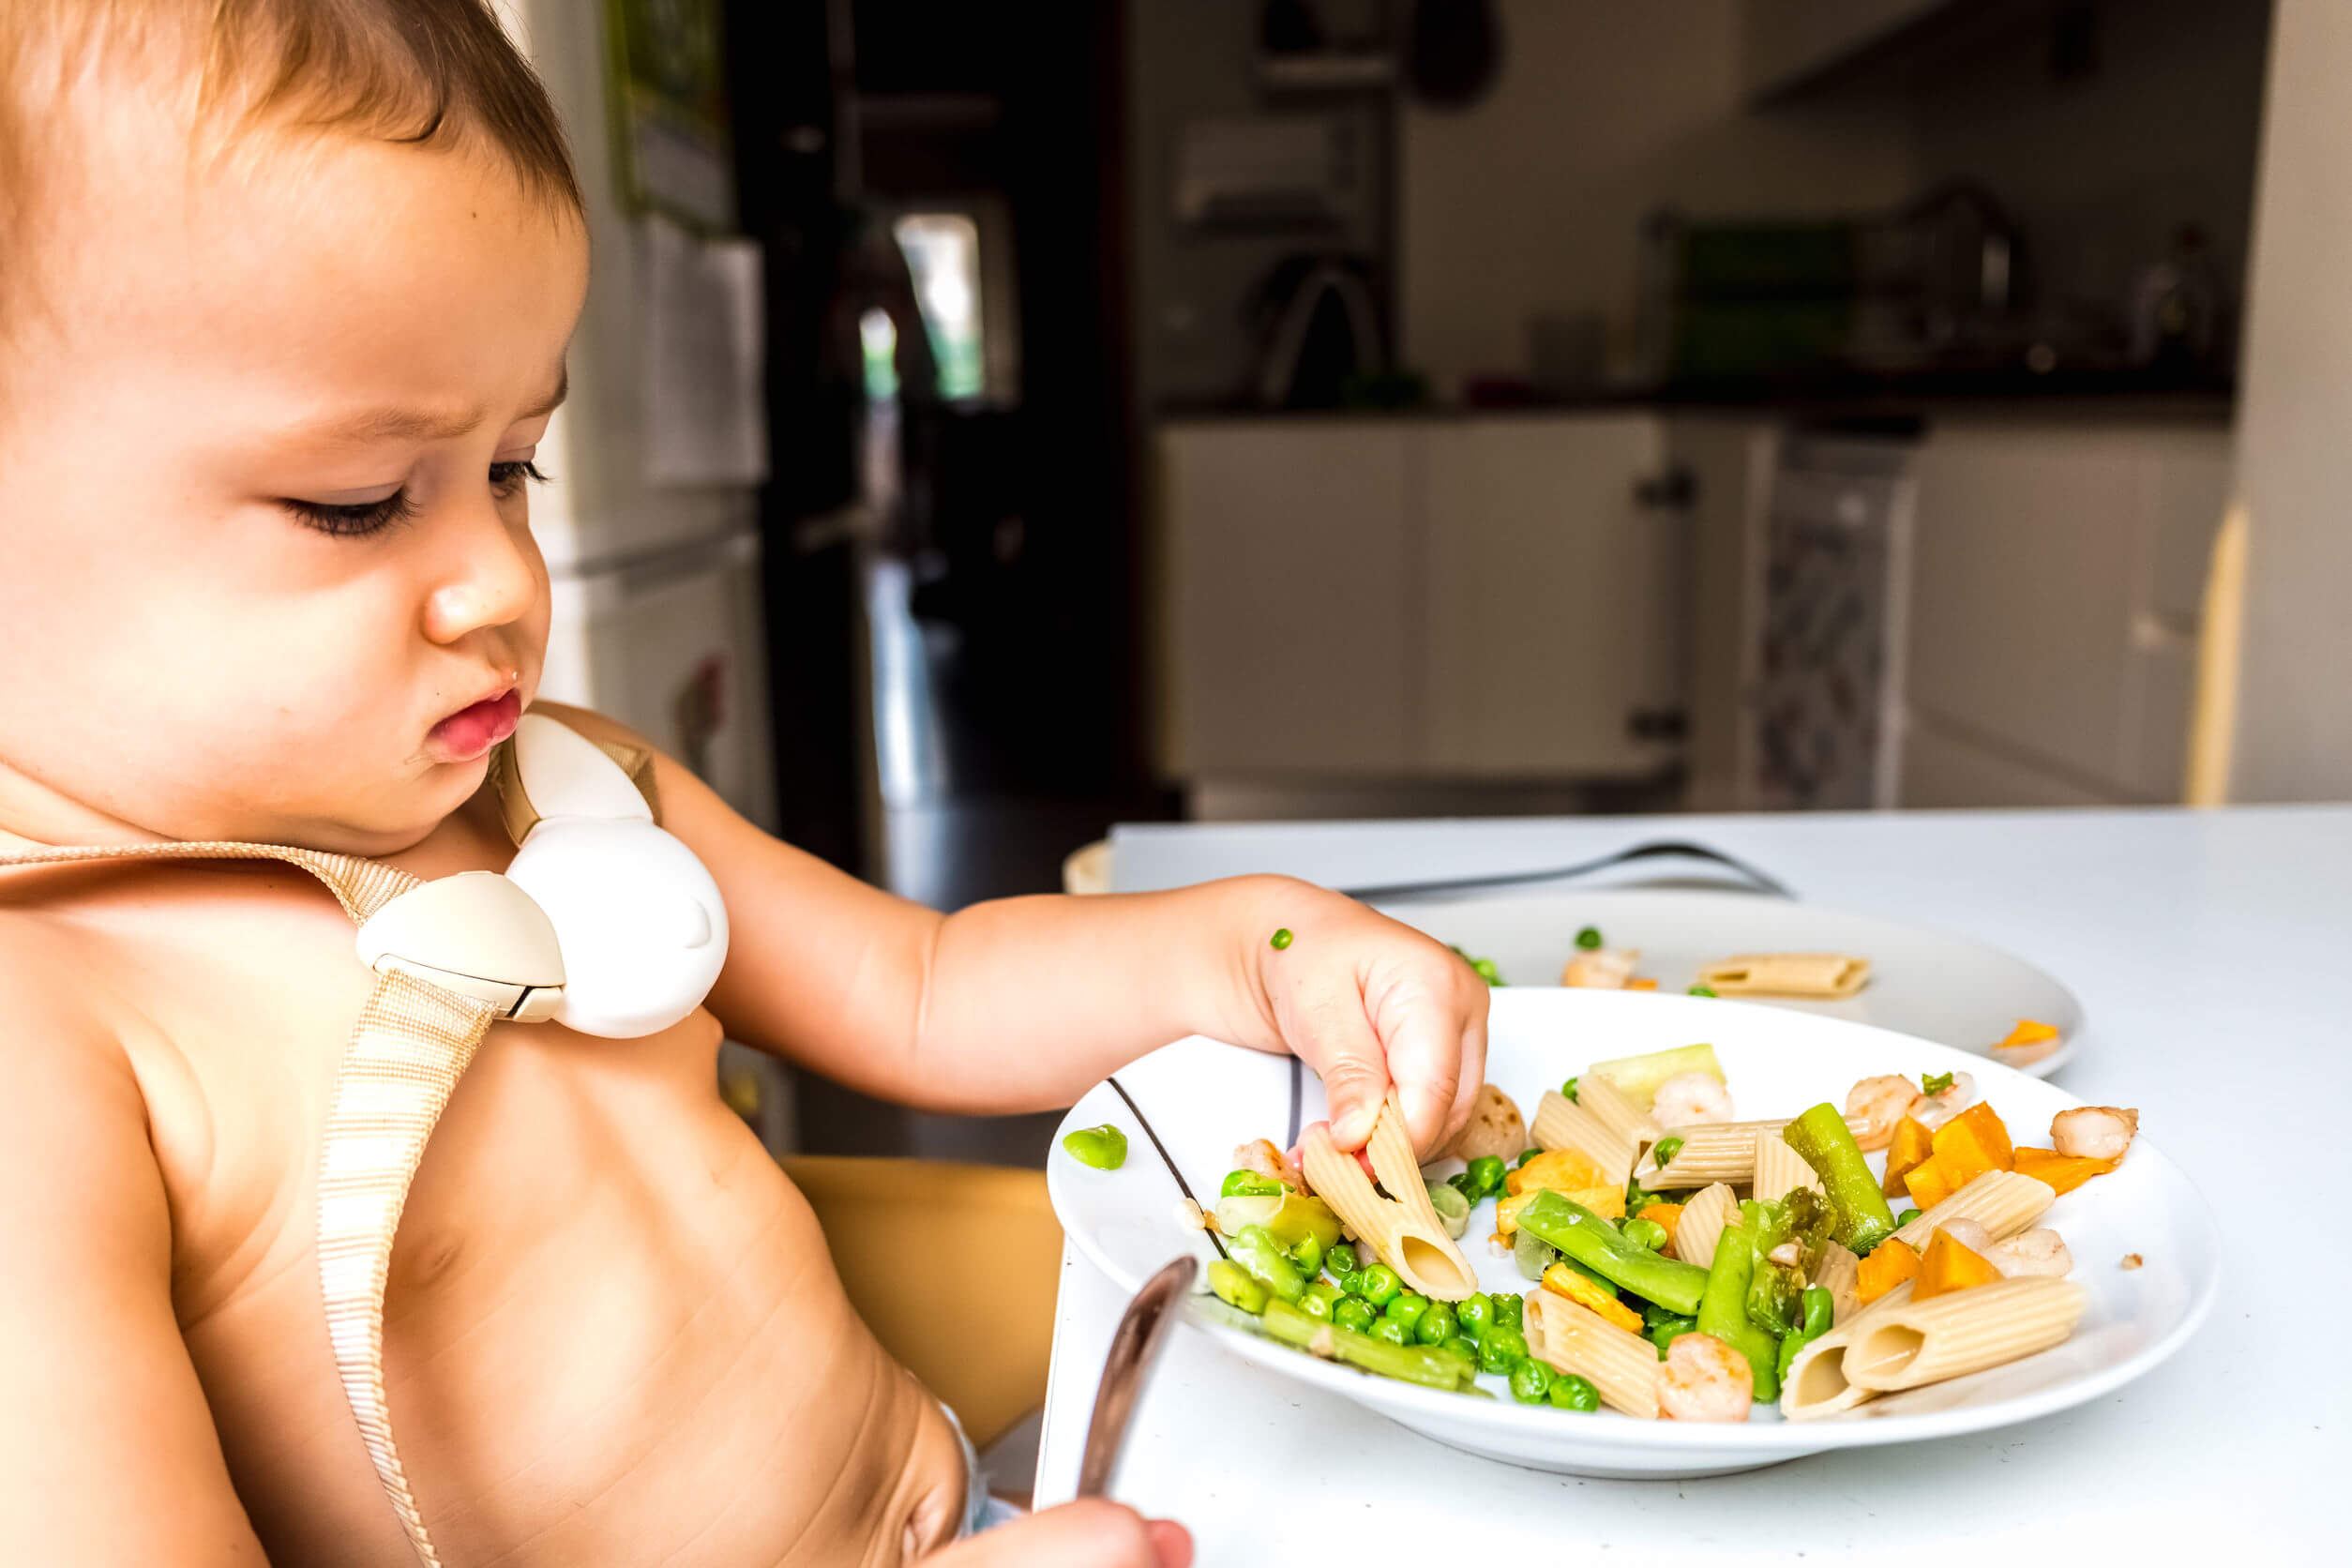 Een baby kijkt met een vies gezicht naar zijn eten